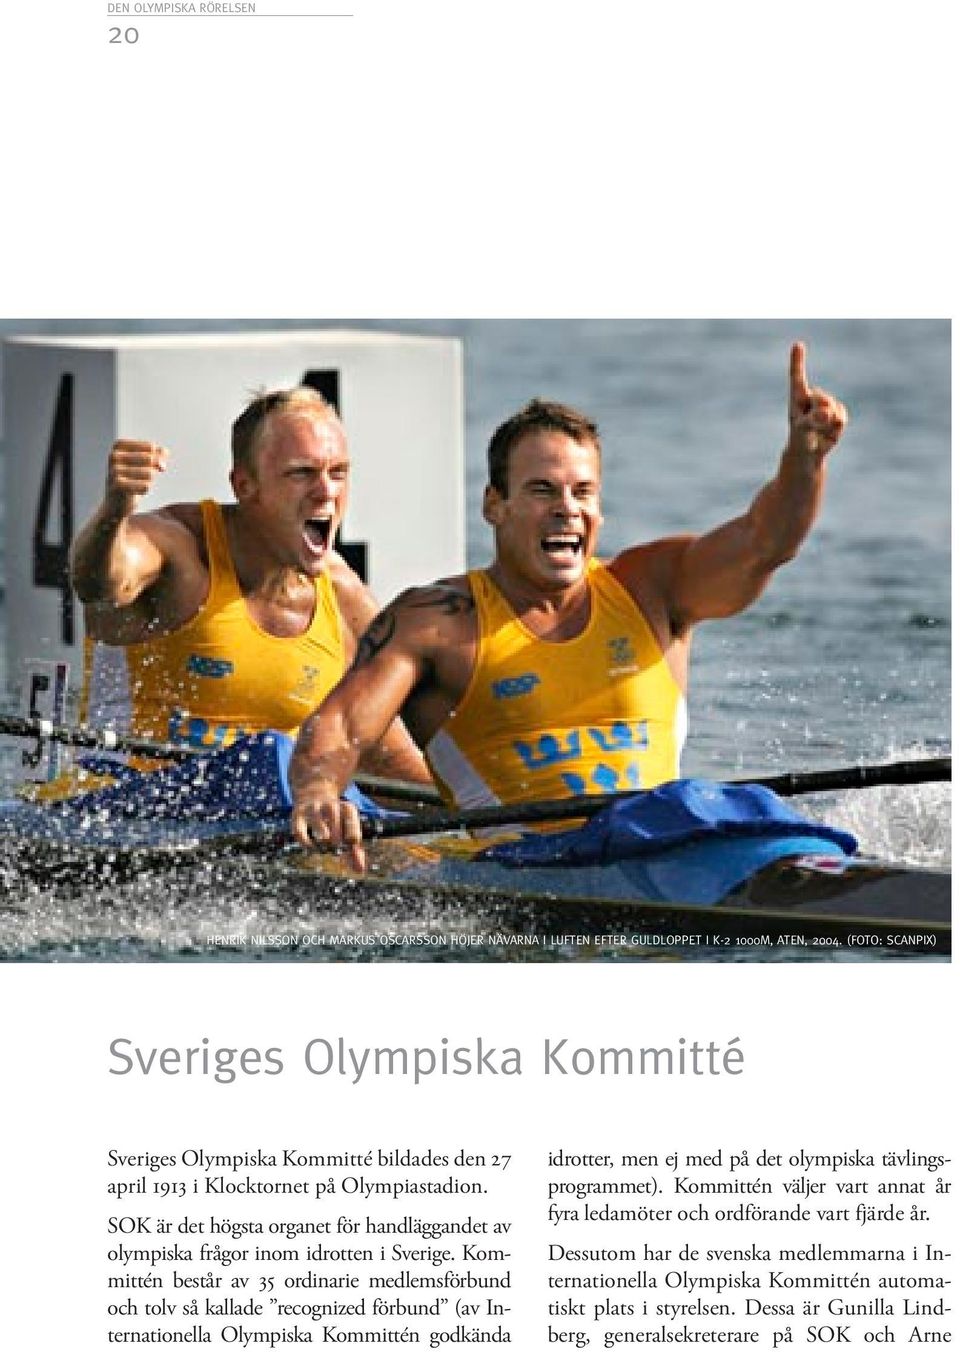 SOK är det högsta organet för handläggandet av olympiska frågor inom idrotten i Sverige.